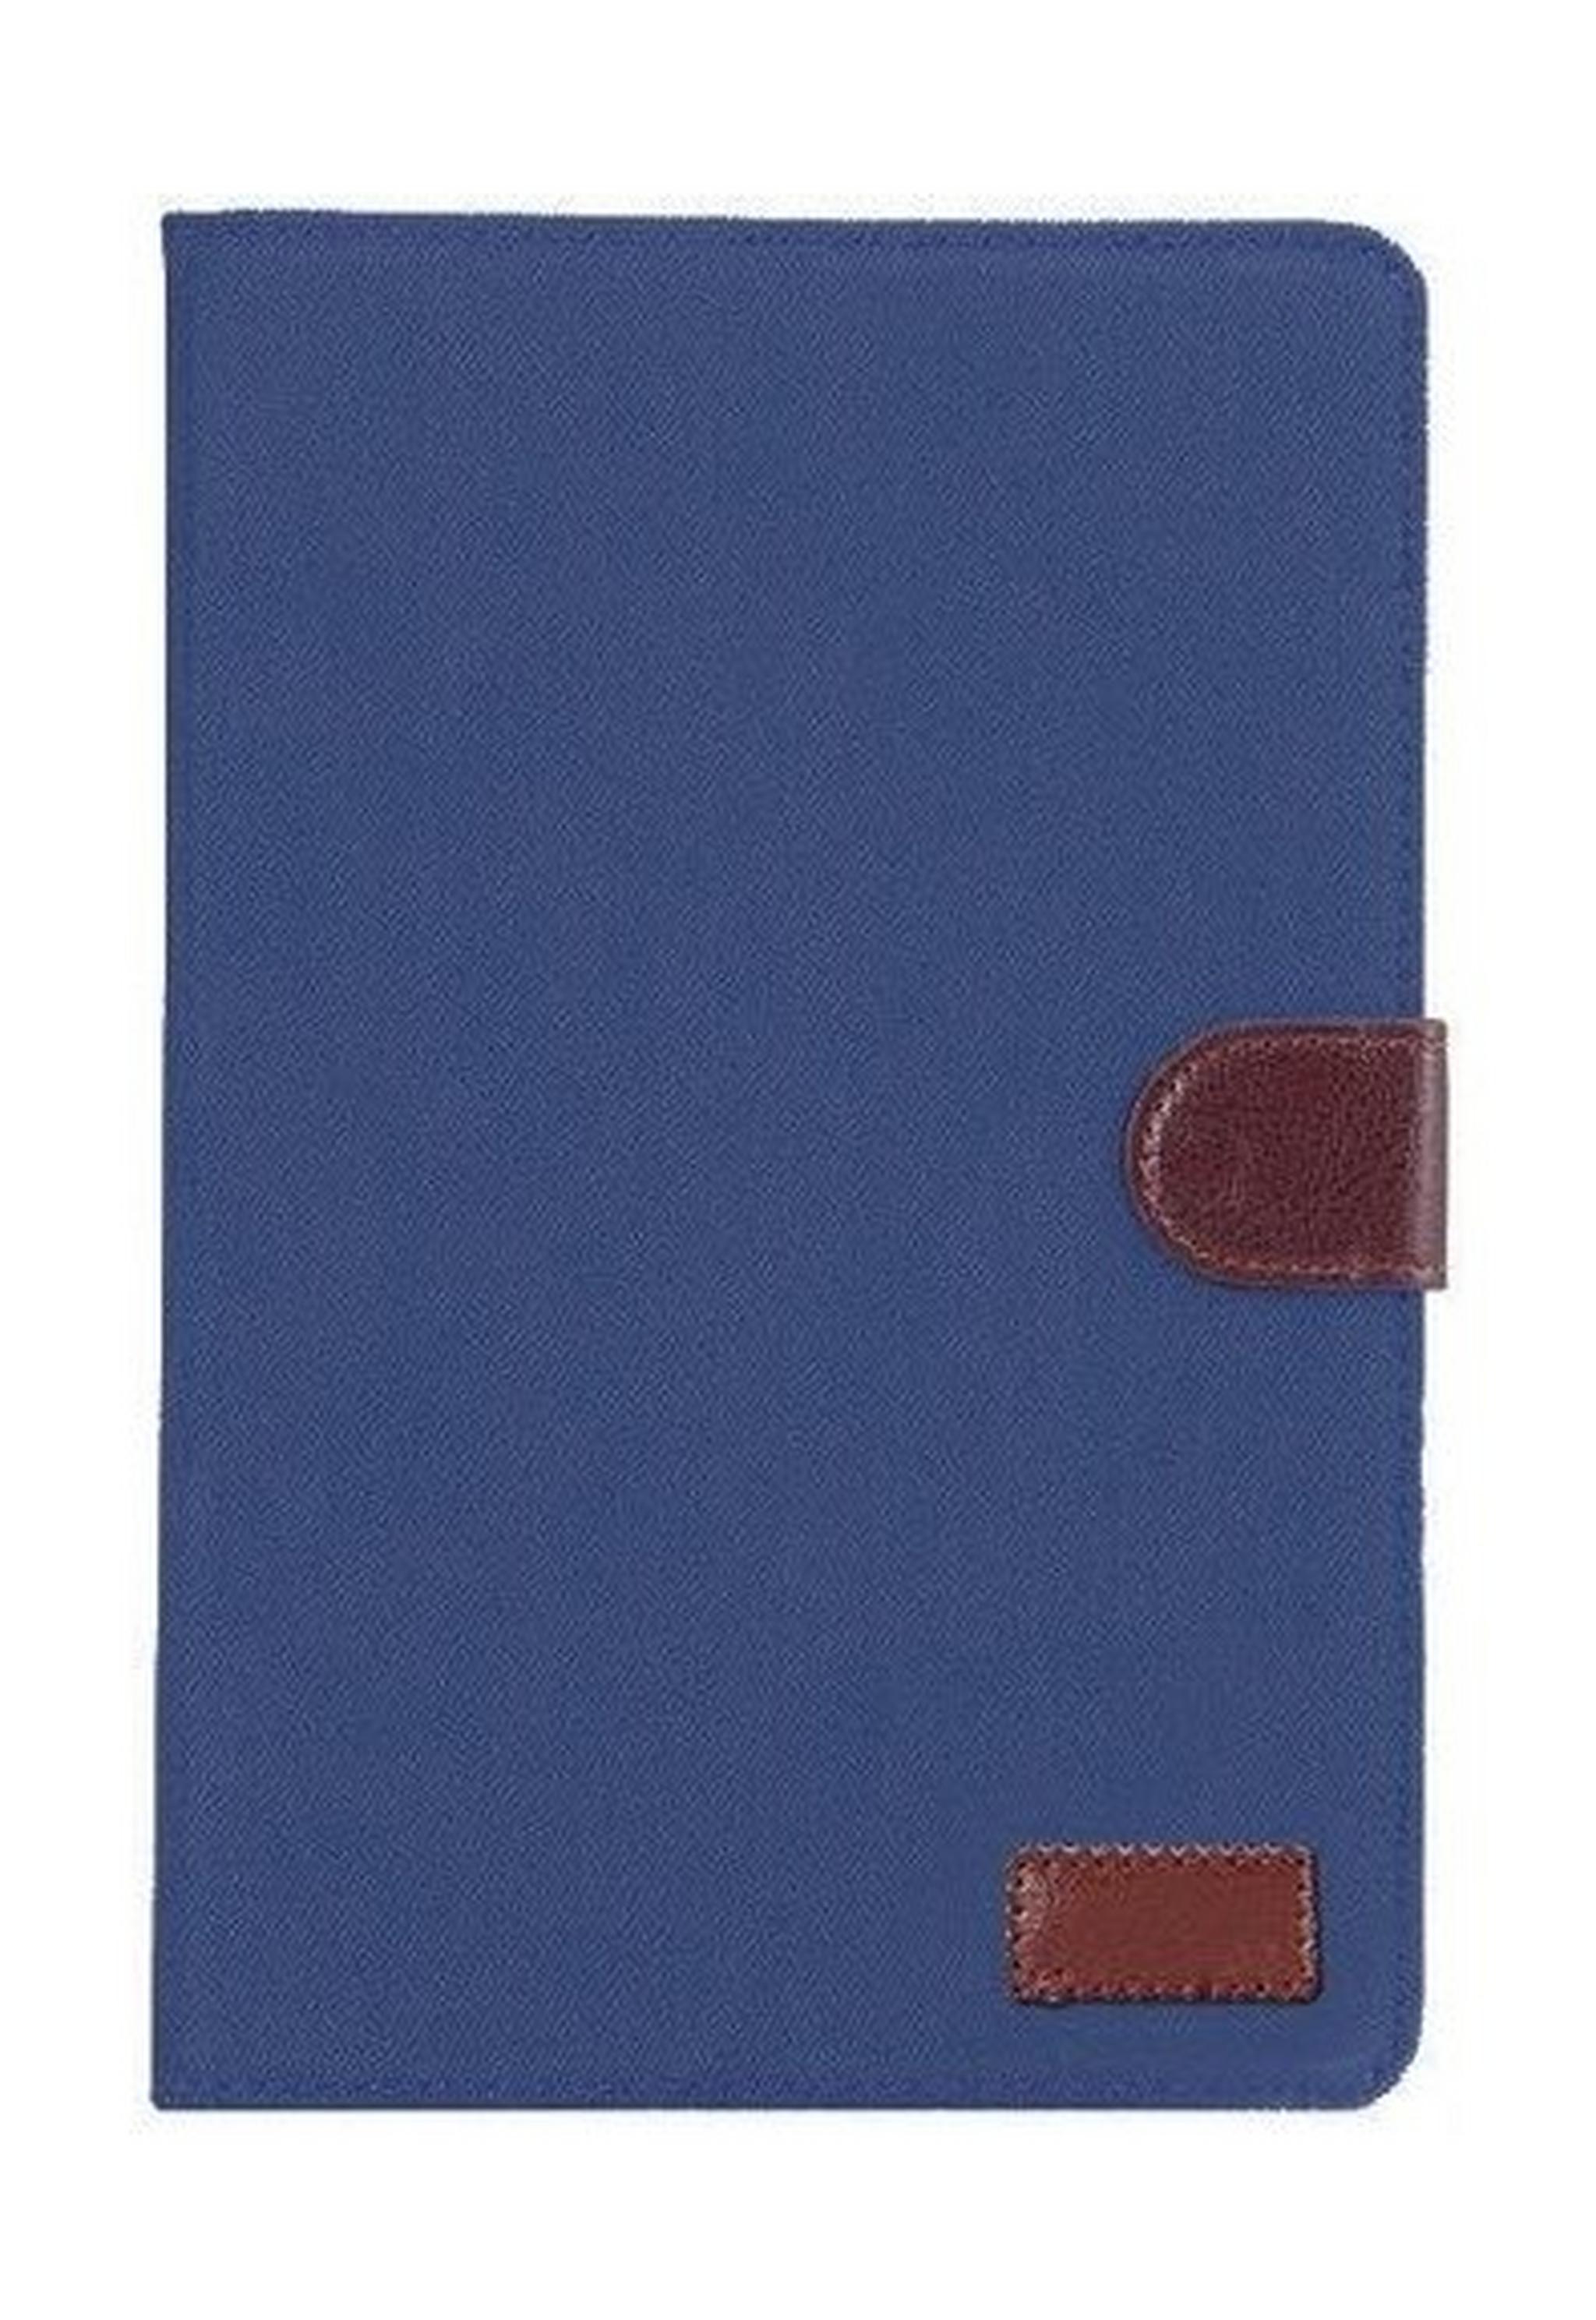 غطاء حماية بحجم 7 بوصة من إي كيو مكس لتابلت – أزرق